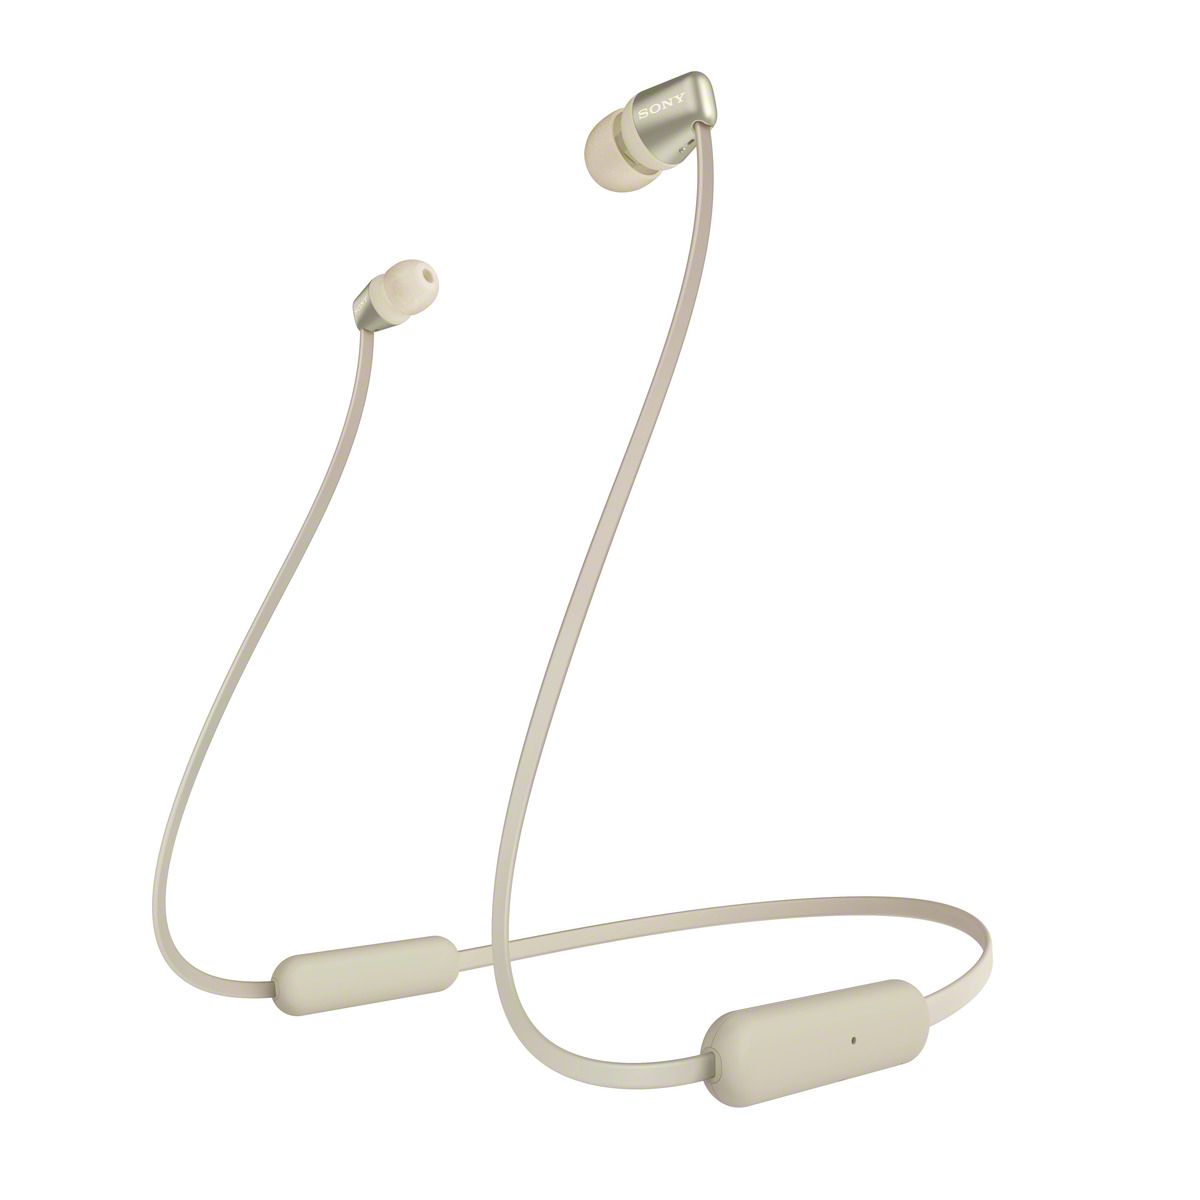 SONY bezdrátová stereo sluchátka WI-C310, zlatá